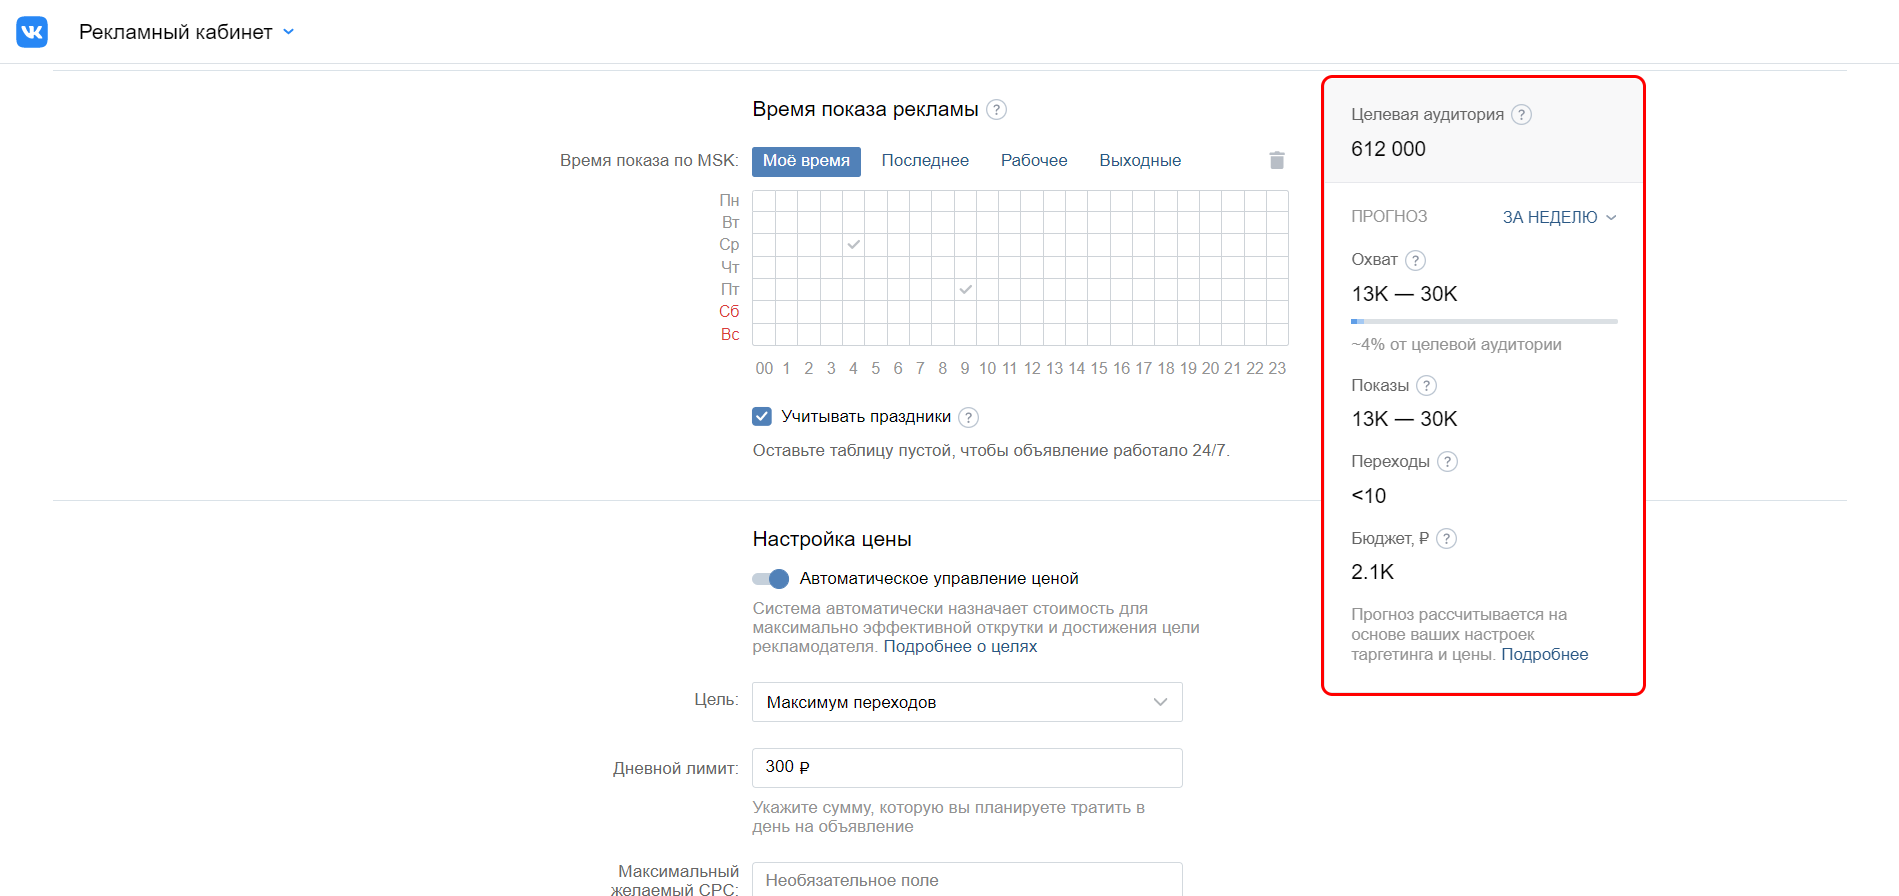 Как посмотреть прогноз на рекламный пост во ВКонтакте